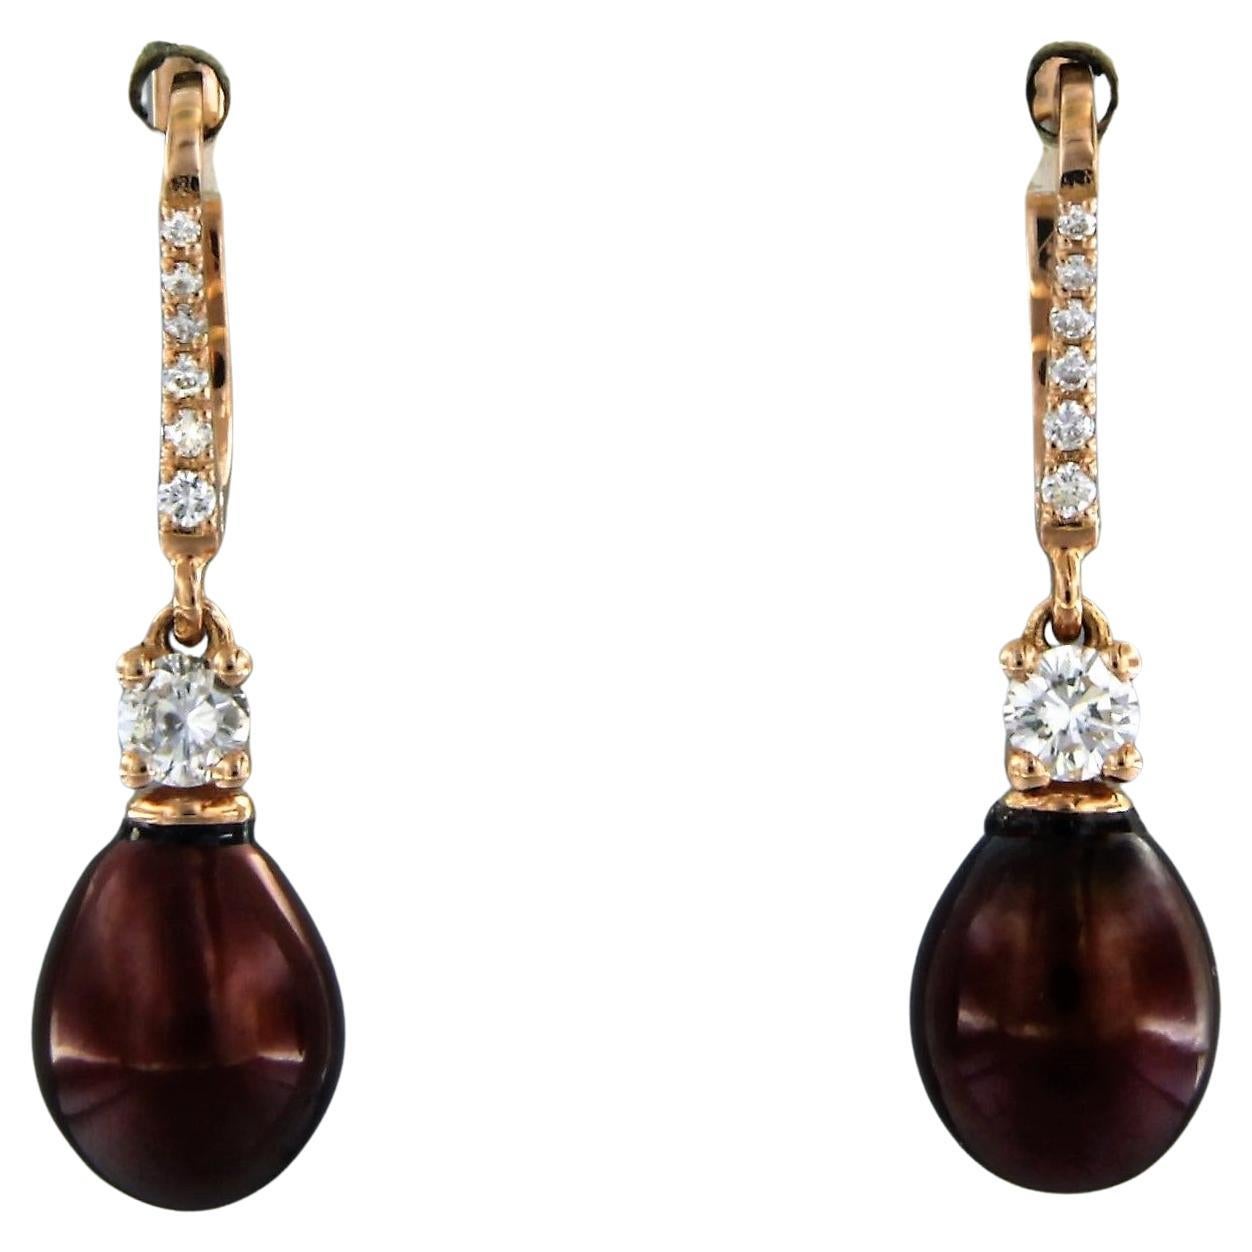 Ohrringe aus 18 Karat Roségold mit Perlen und Diamanten besetzt